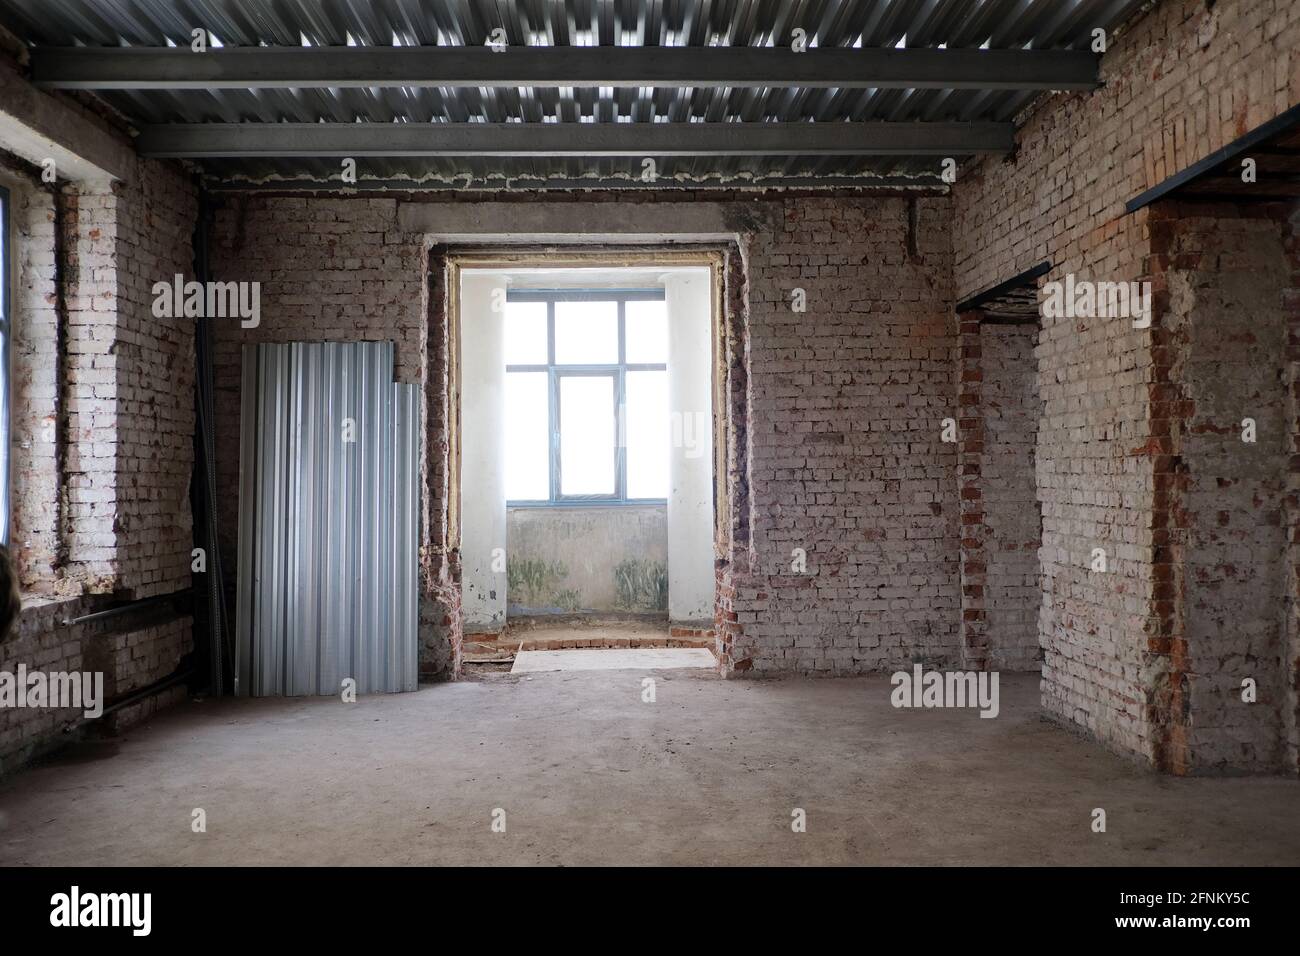 Das Innere des schäbigen Zimmers mit verwitterten Ziegelwänden war verödet Gebäude tagsüber Stockfoto